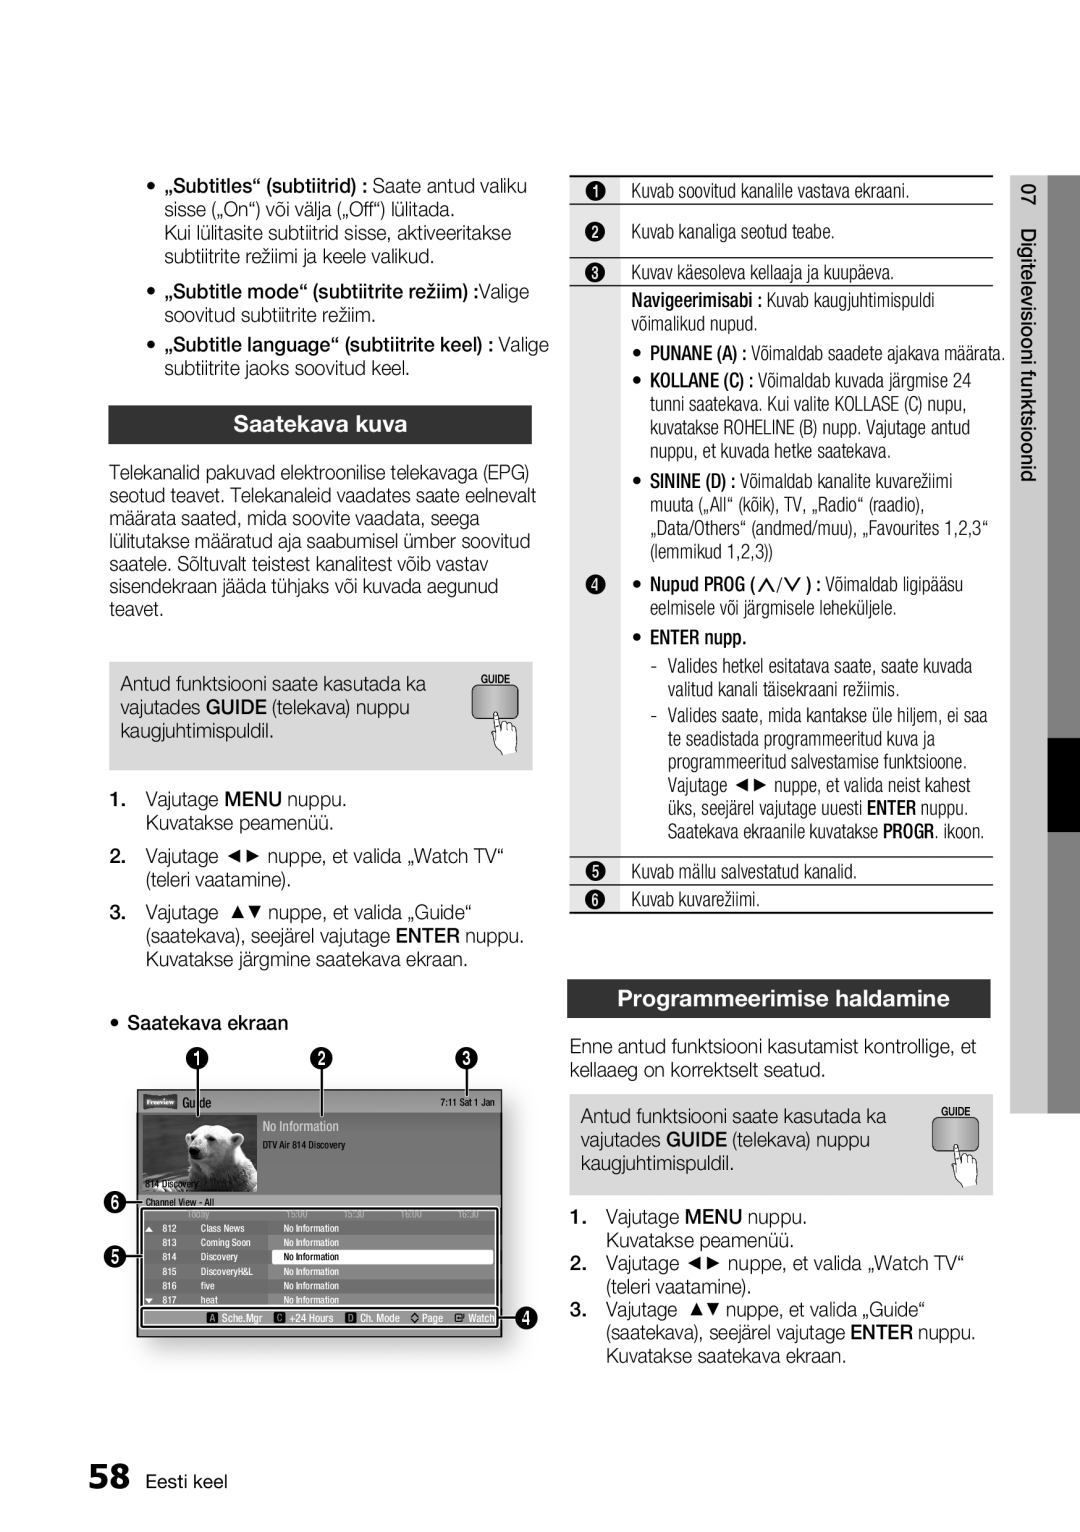 Samsung BD-E6300/EN manual Saatekava kuva, Programmeerimise haldamine, muuta „All“ kõik, TV, „Radio“ raadio, Eesti keel 